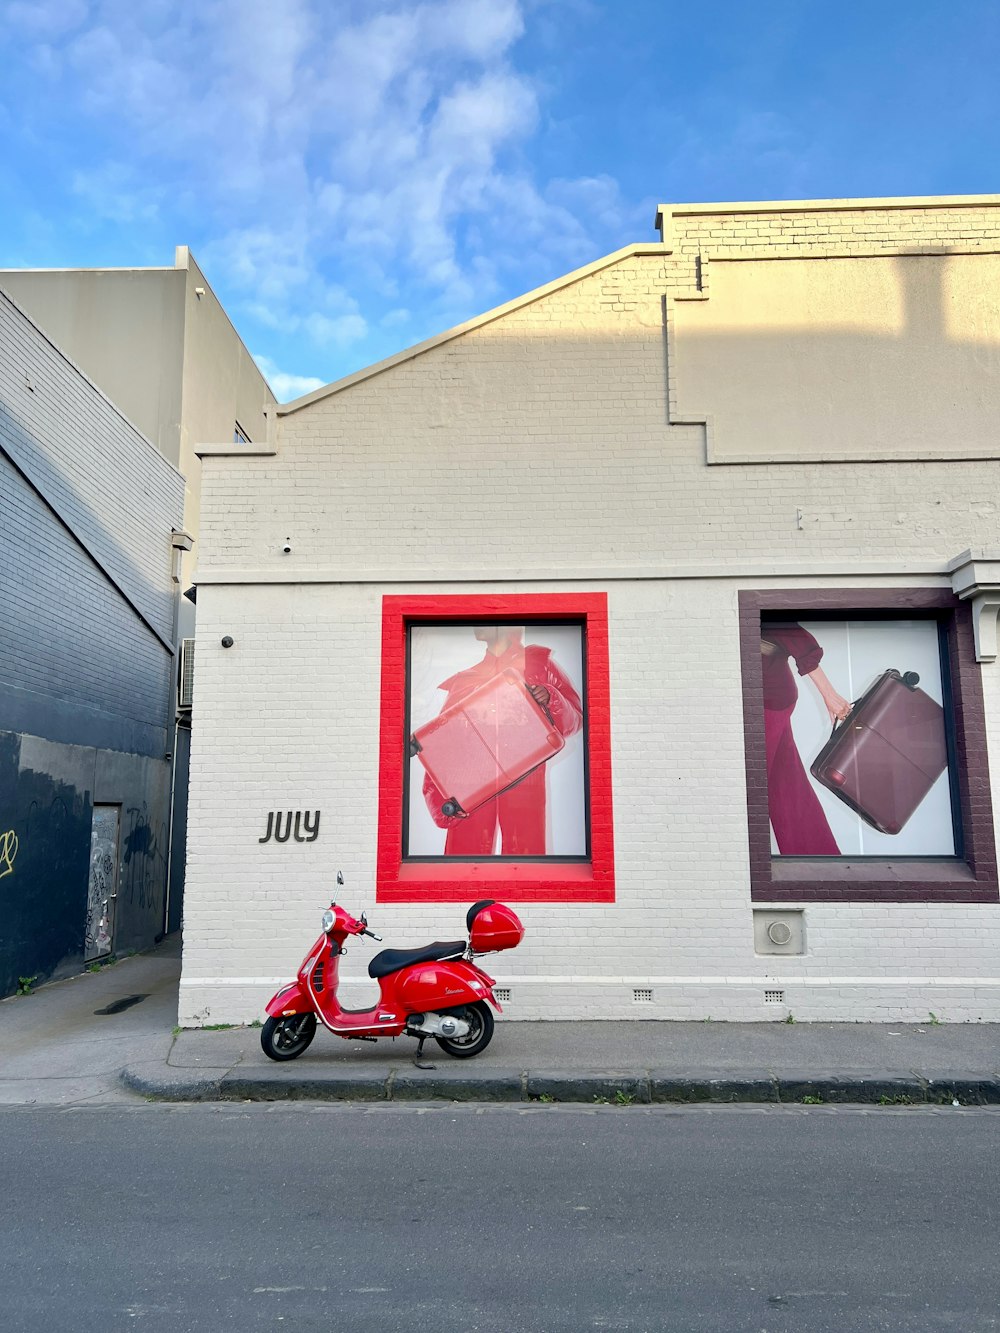 uma scooter vermelha estacionada em frente a um prédio